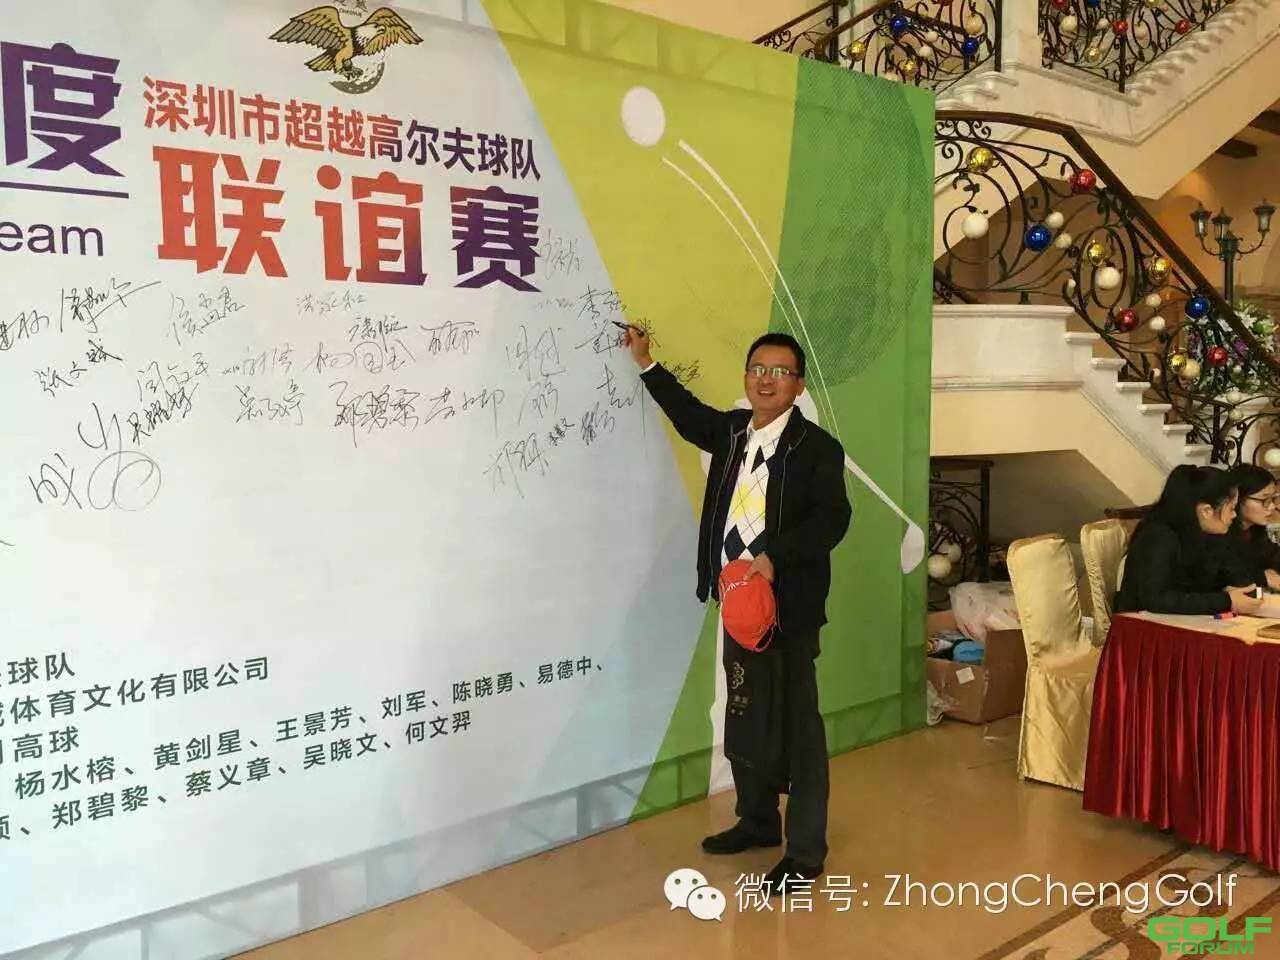 祝贺深圳超越高尔夫球队2015年度联谊赛圆满落幕